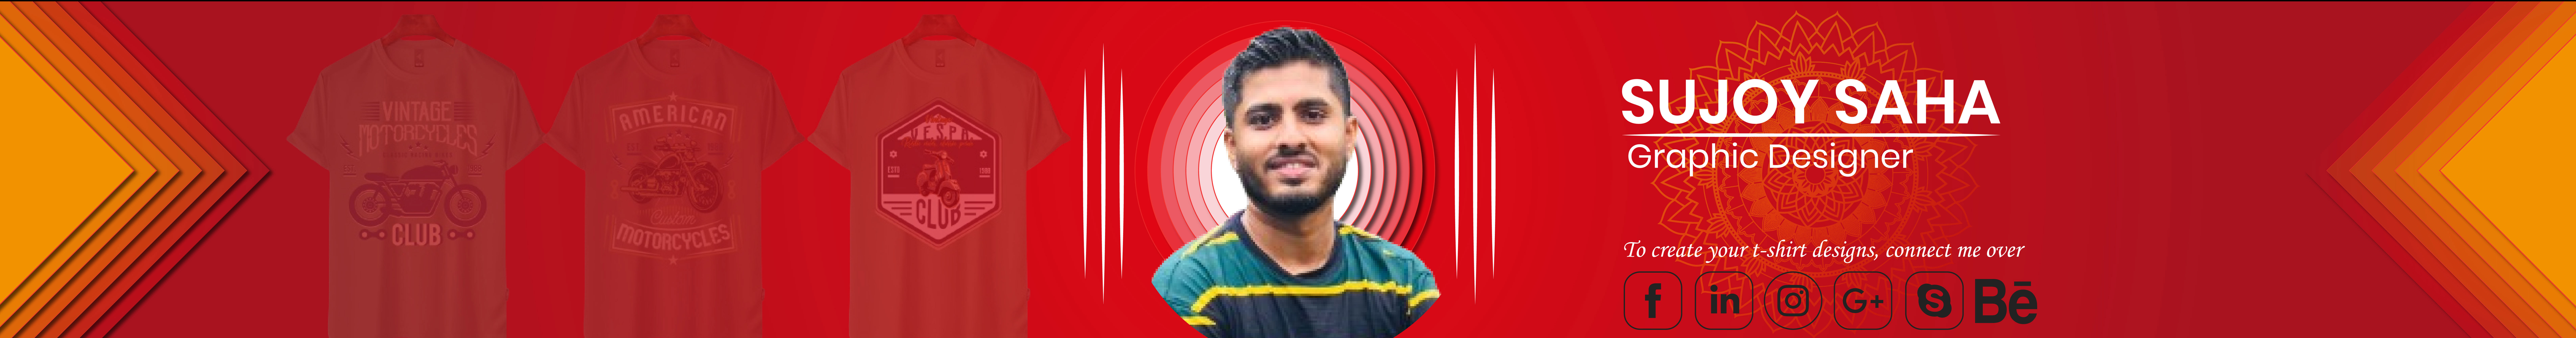 Banner de perfil de Sujoy Saha